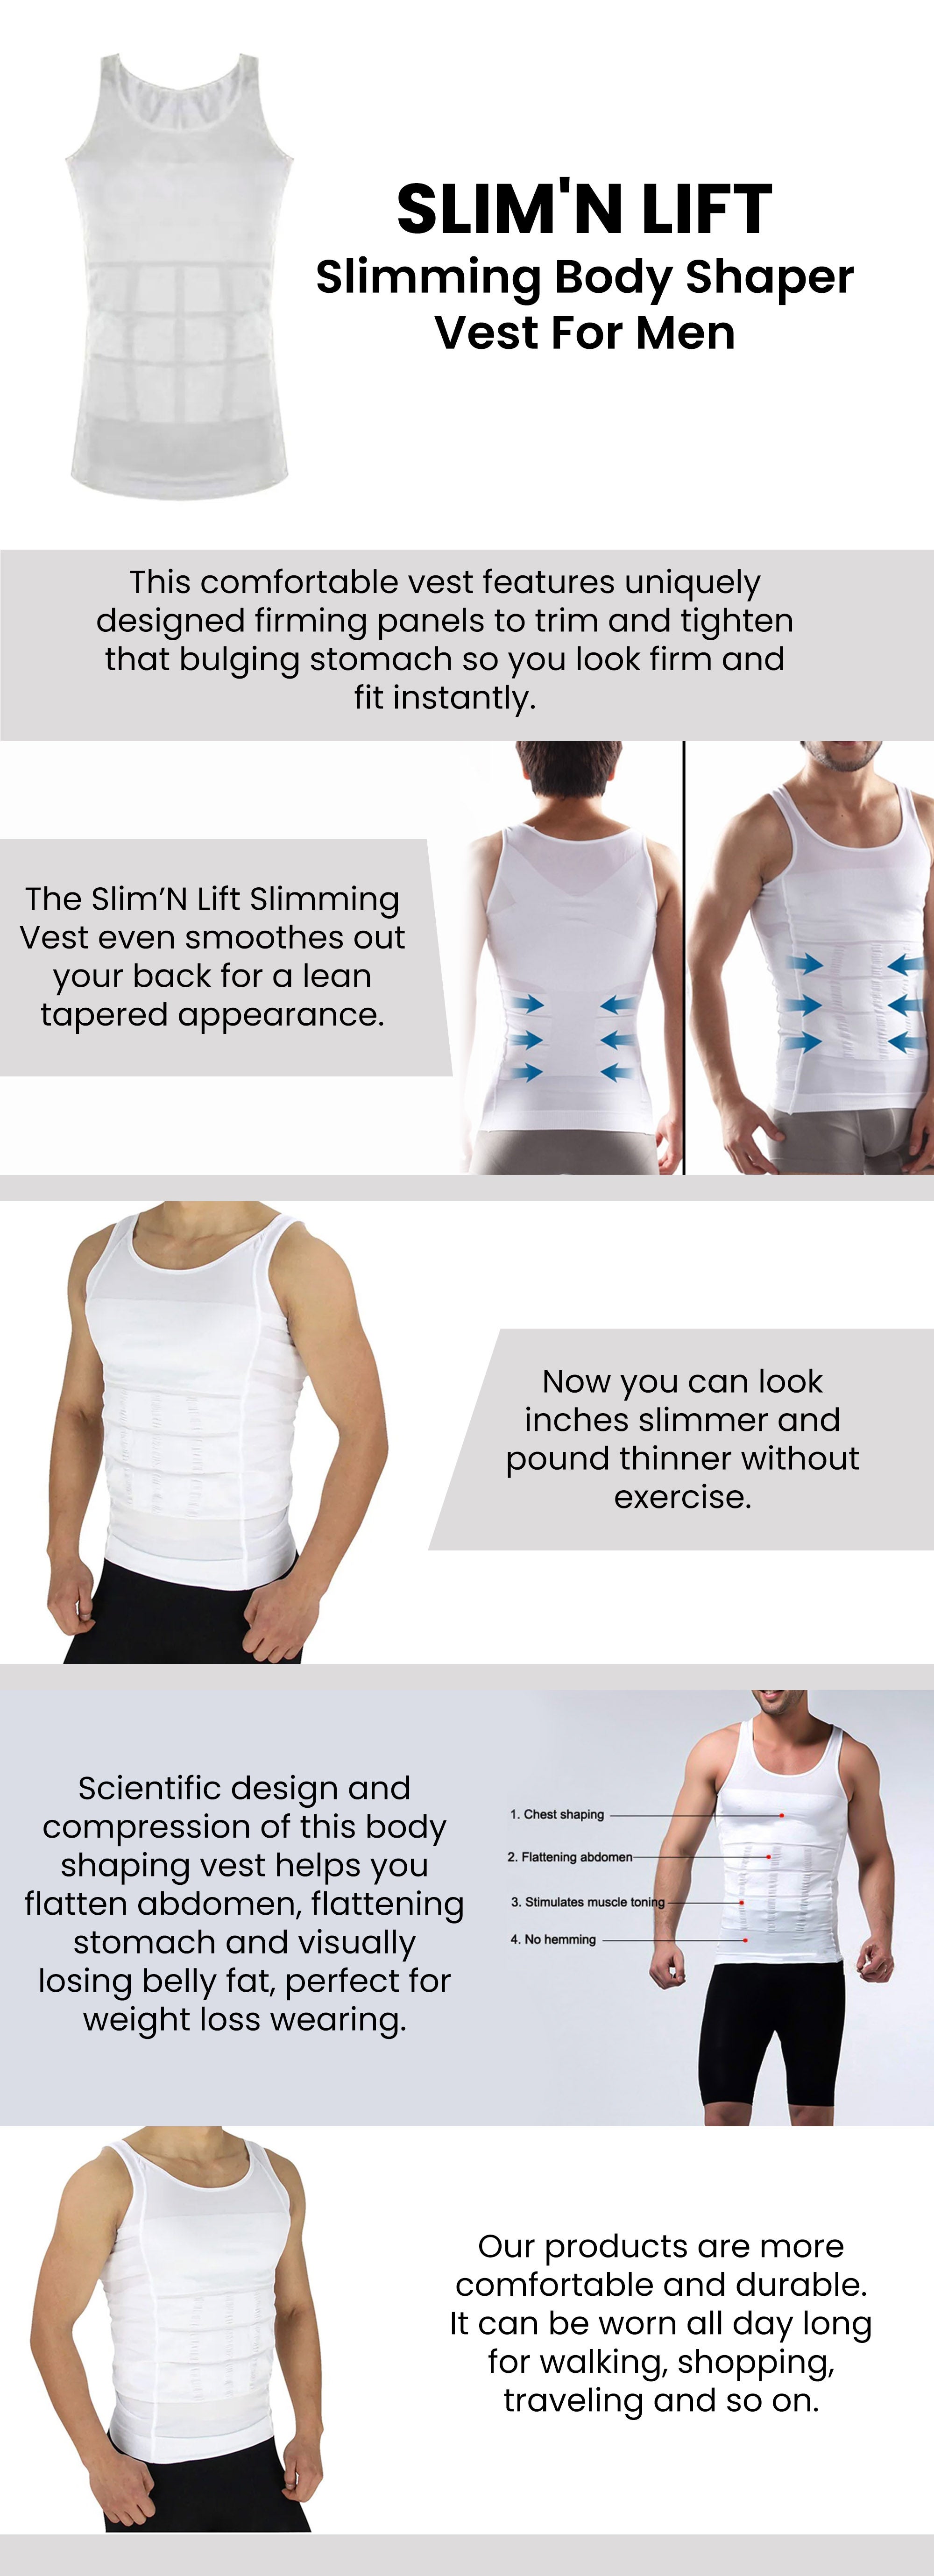 Slim-n-Lift Vest Body Shaper For Men